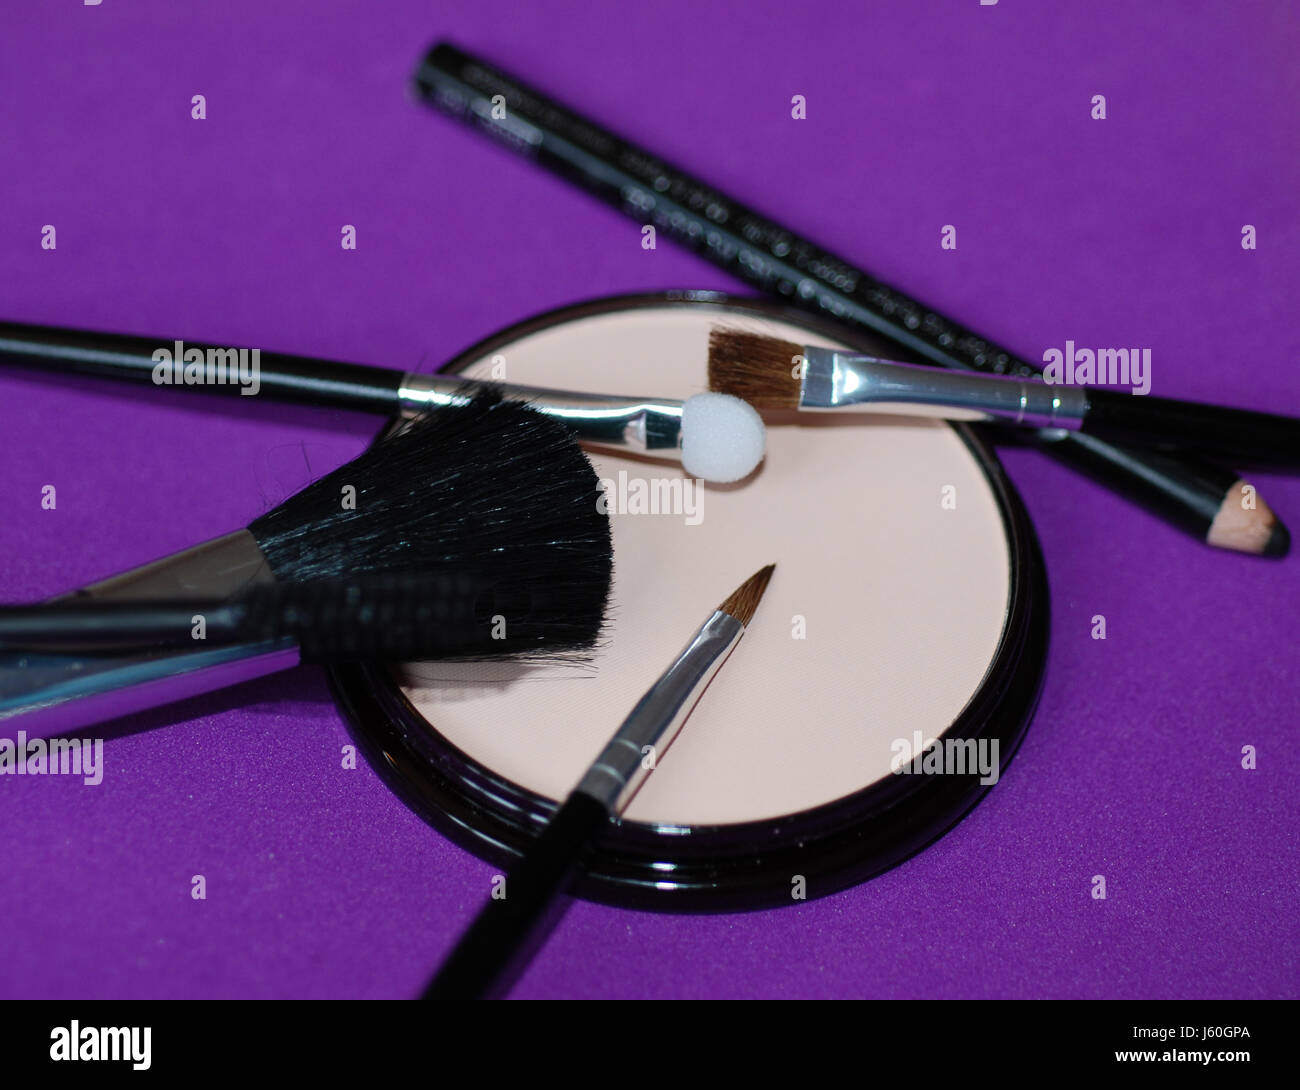 Mascara brosse cosmétiques soins de beauté poudre make-up pinceau mode de brossage Banque D'Images